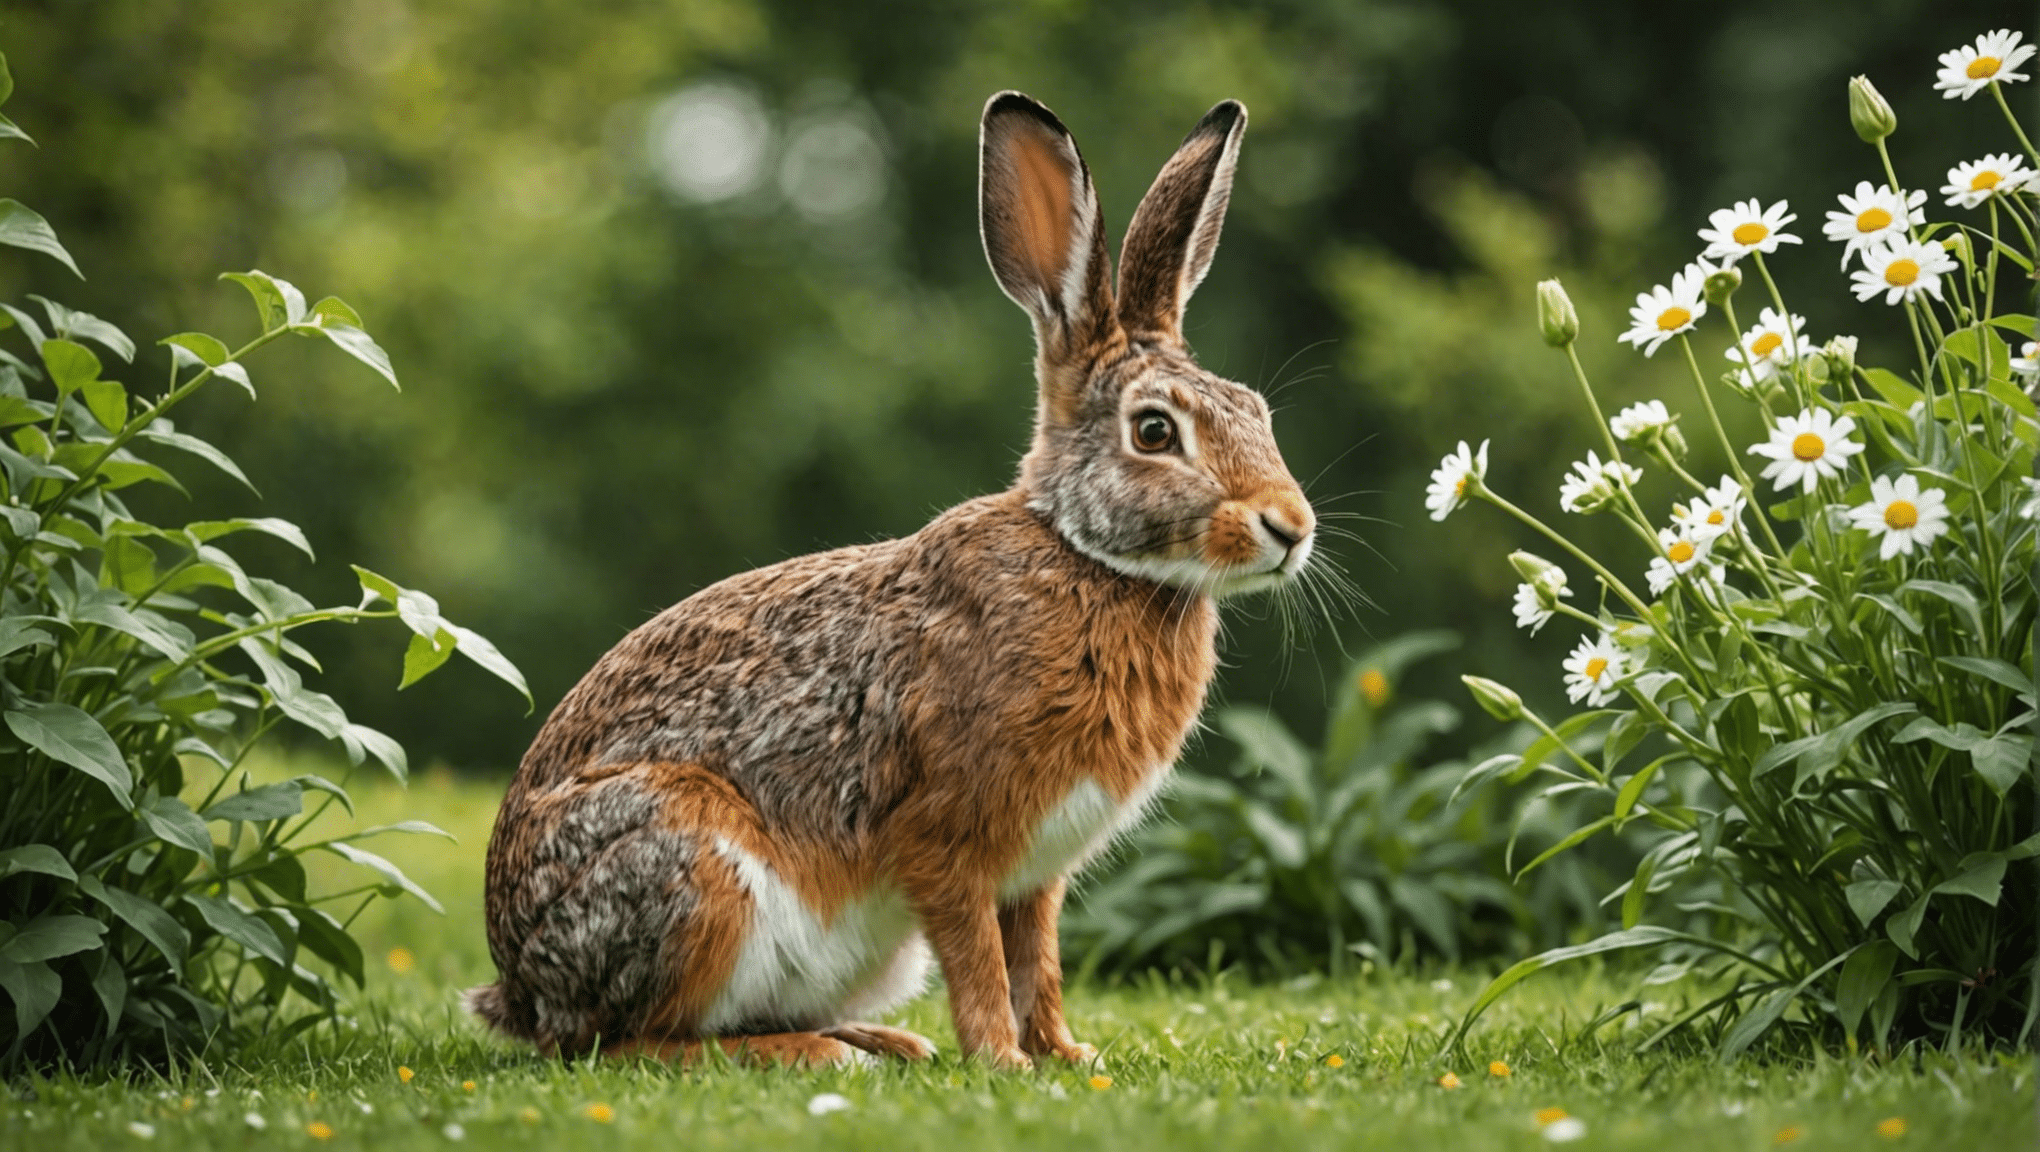 objavte rozdiely medzi zajacmi a králikmi v tomto dôslednom skúmaní ich jedinečných vlastností a správania.